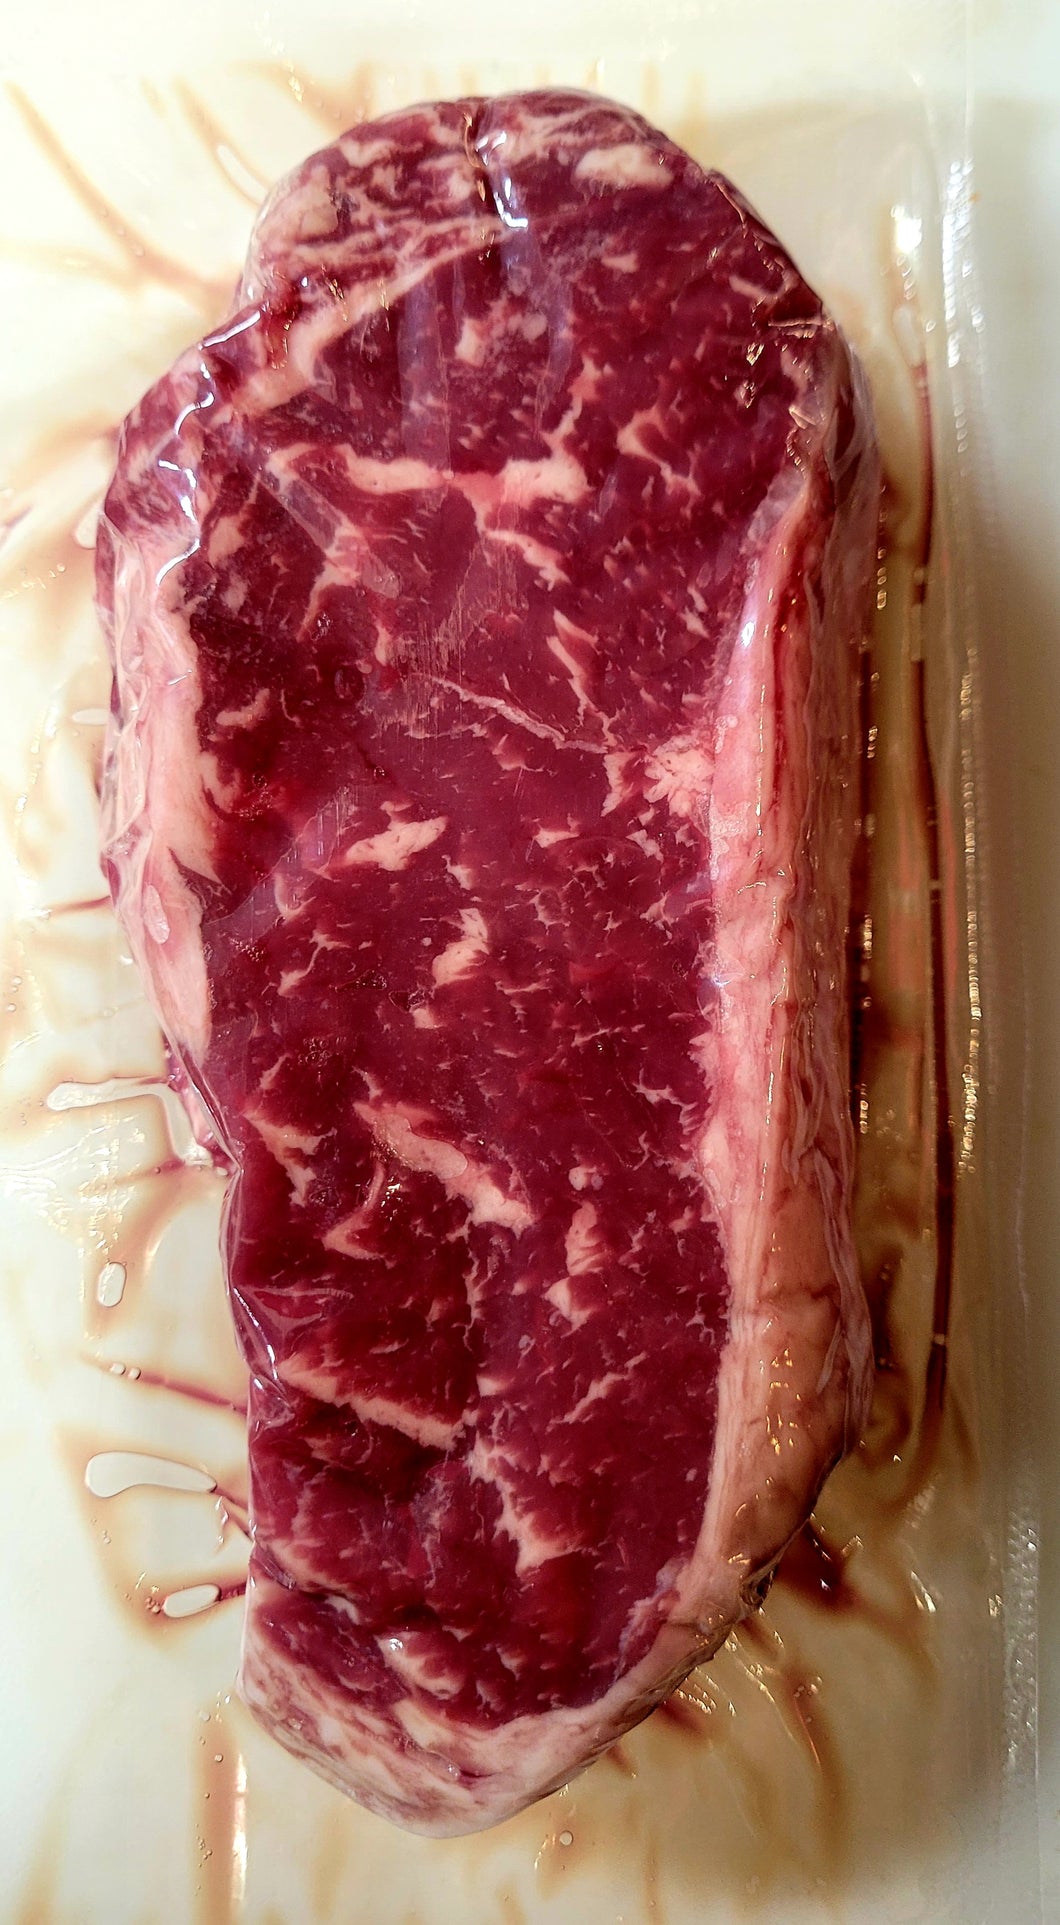 Wagyu New York Striploin steak- 1lb